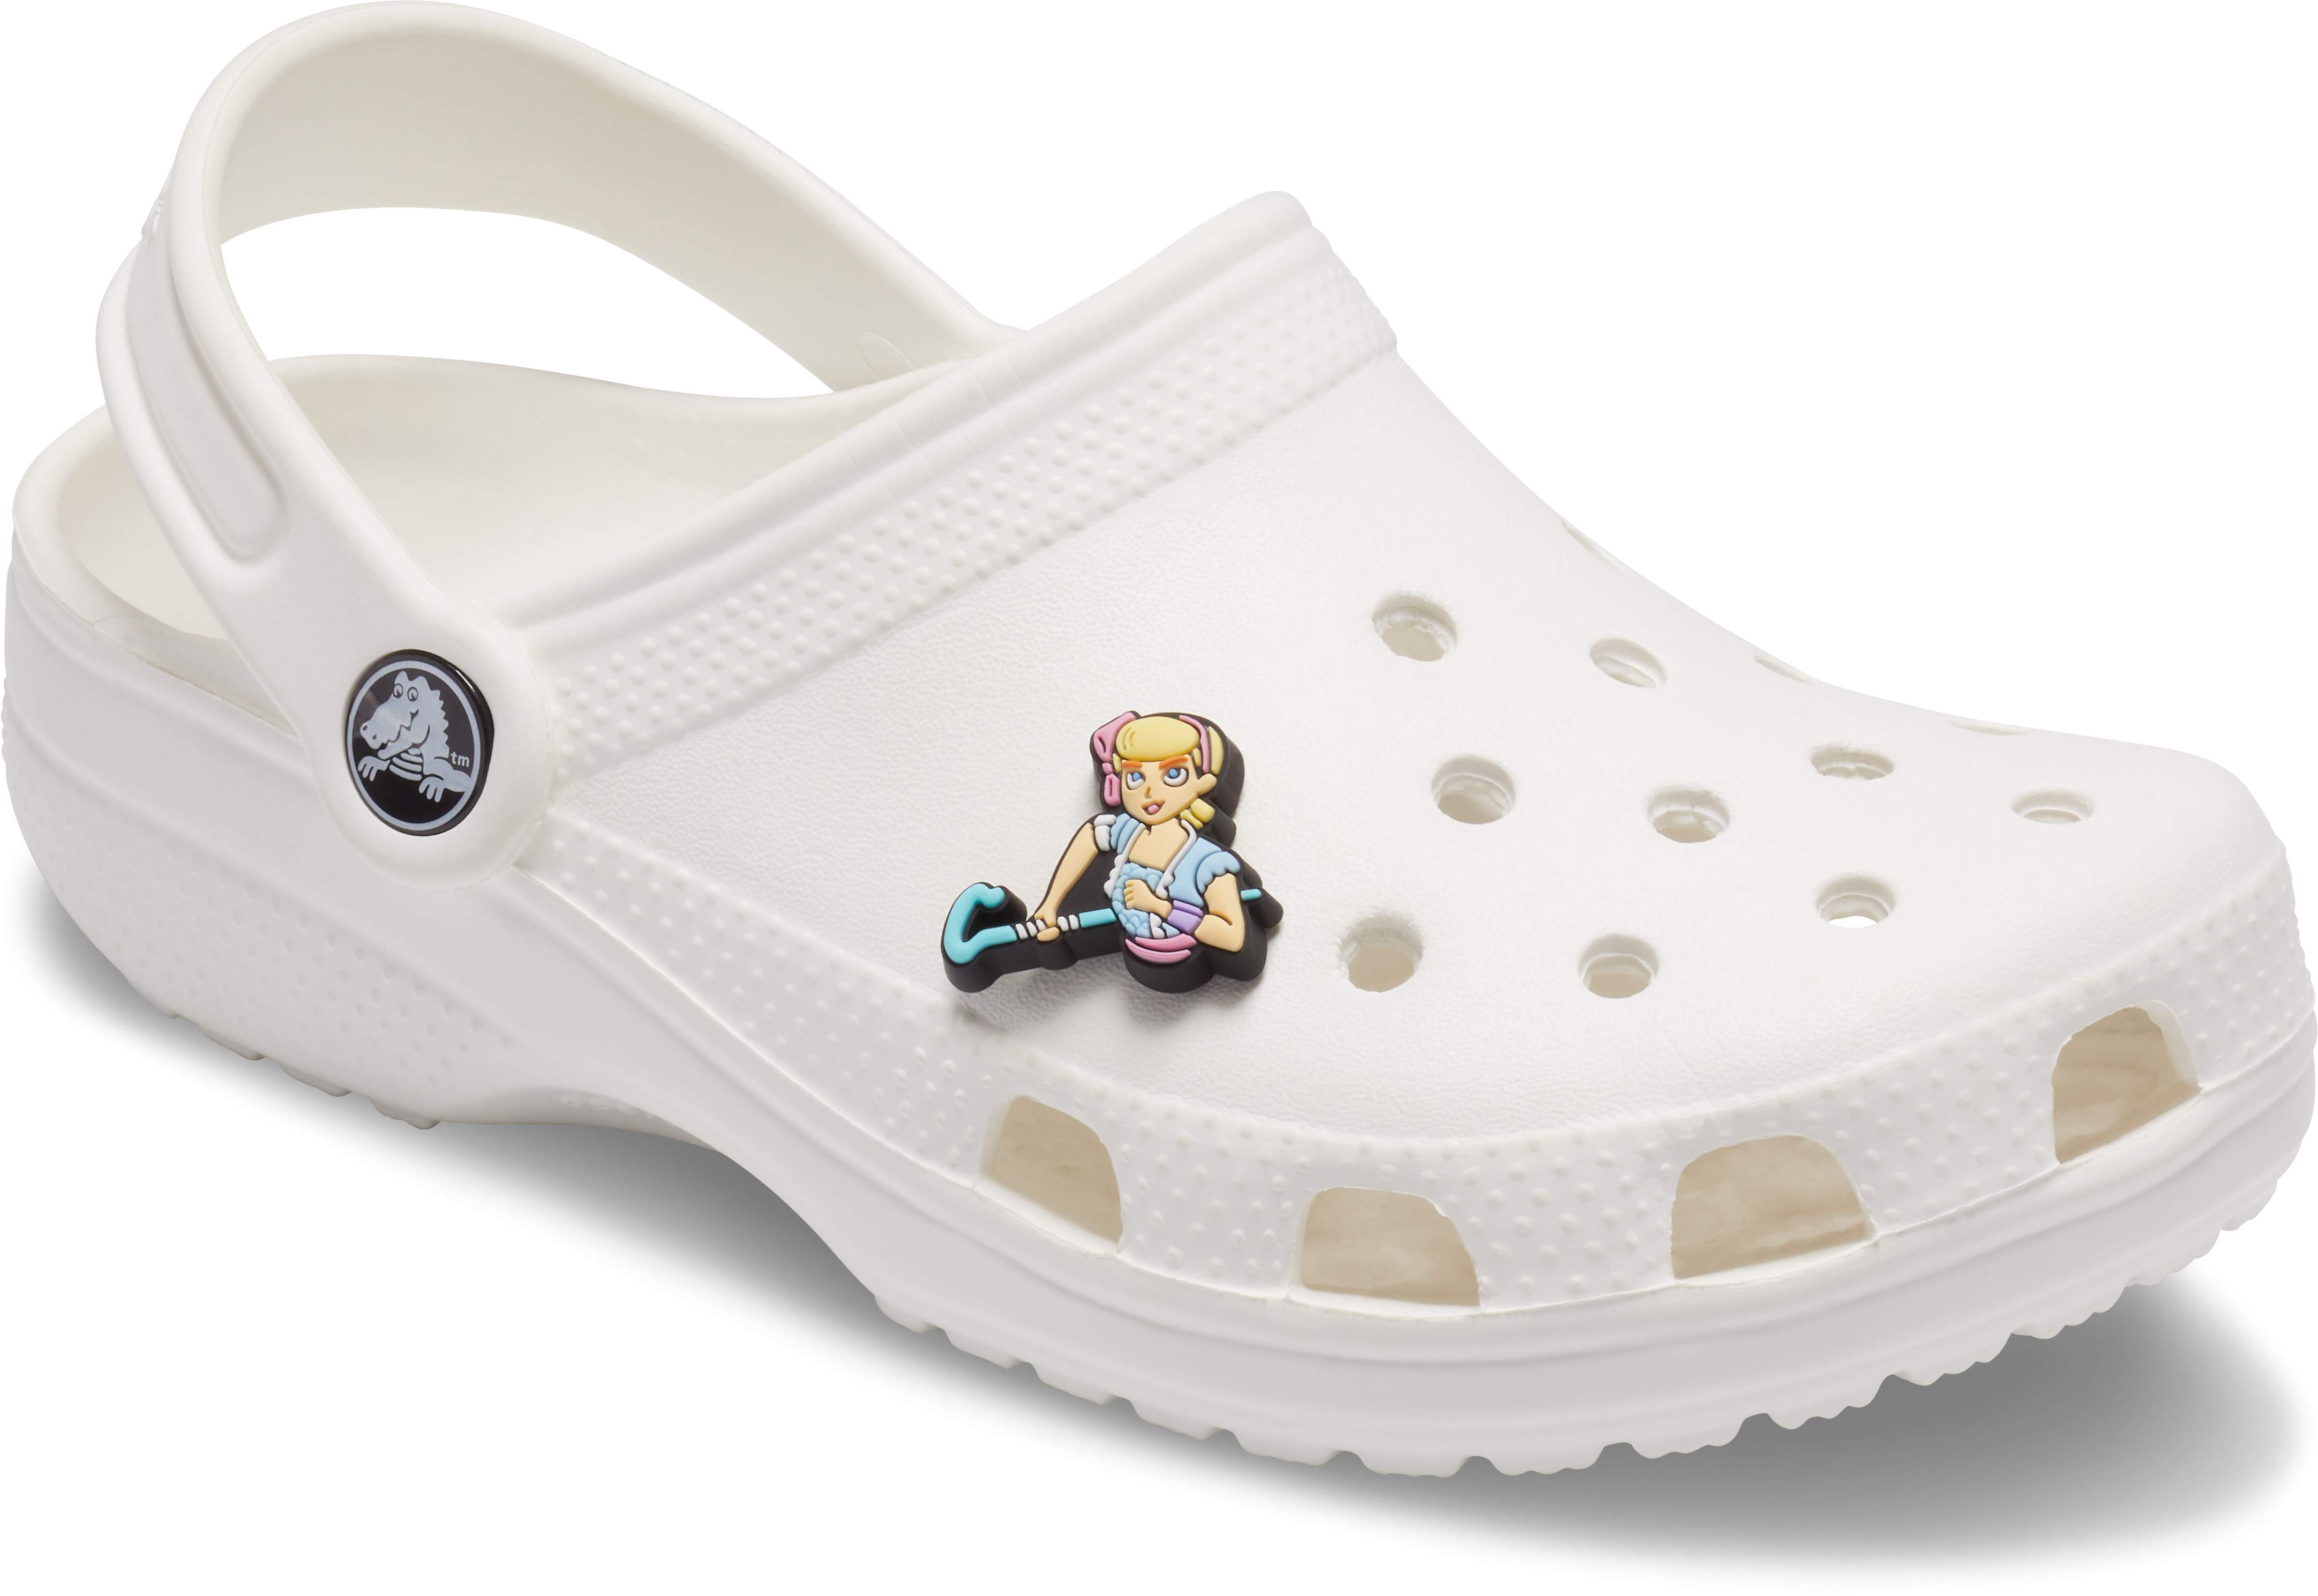 Toy Story 4 Little Bo Peep Jibbitz Shoe 